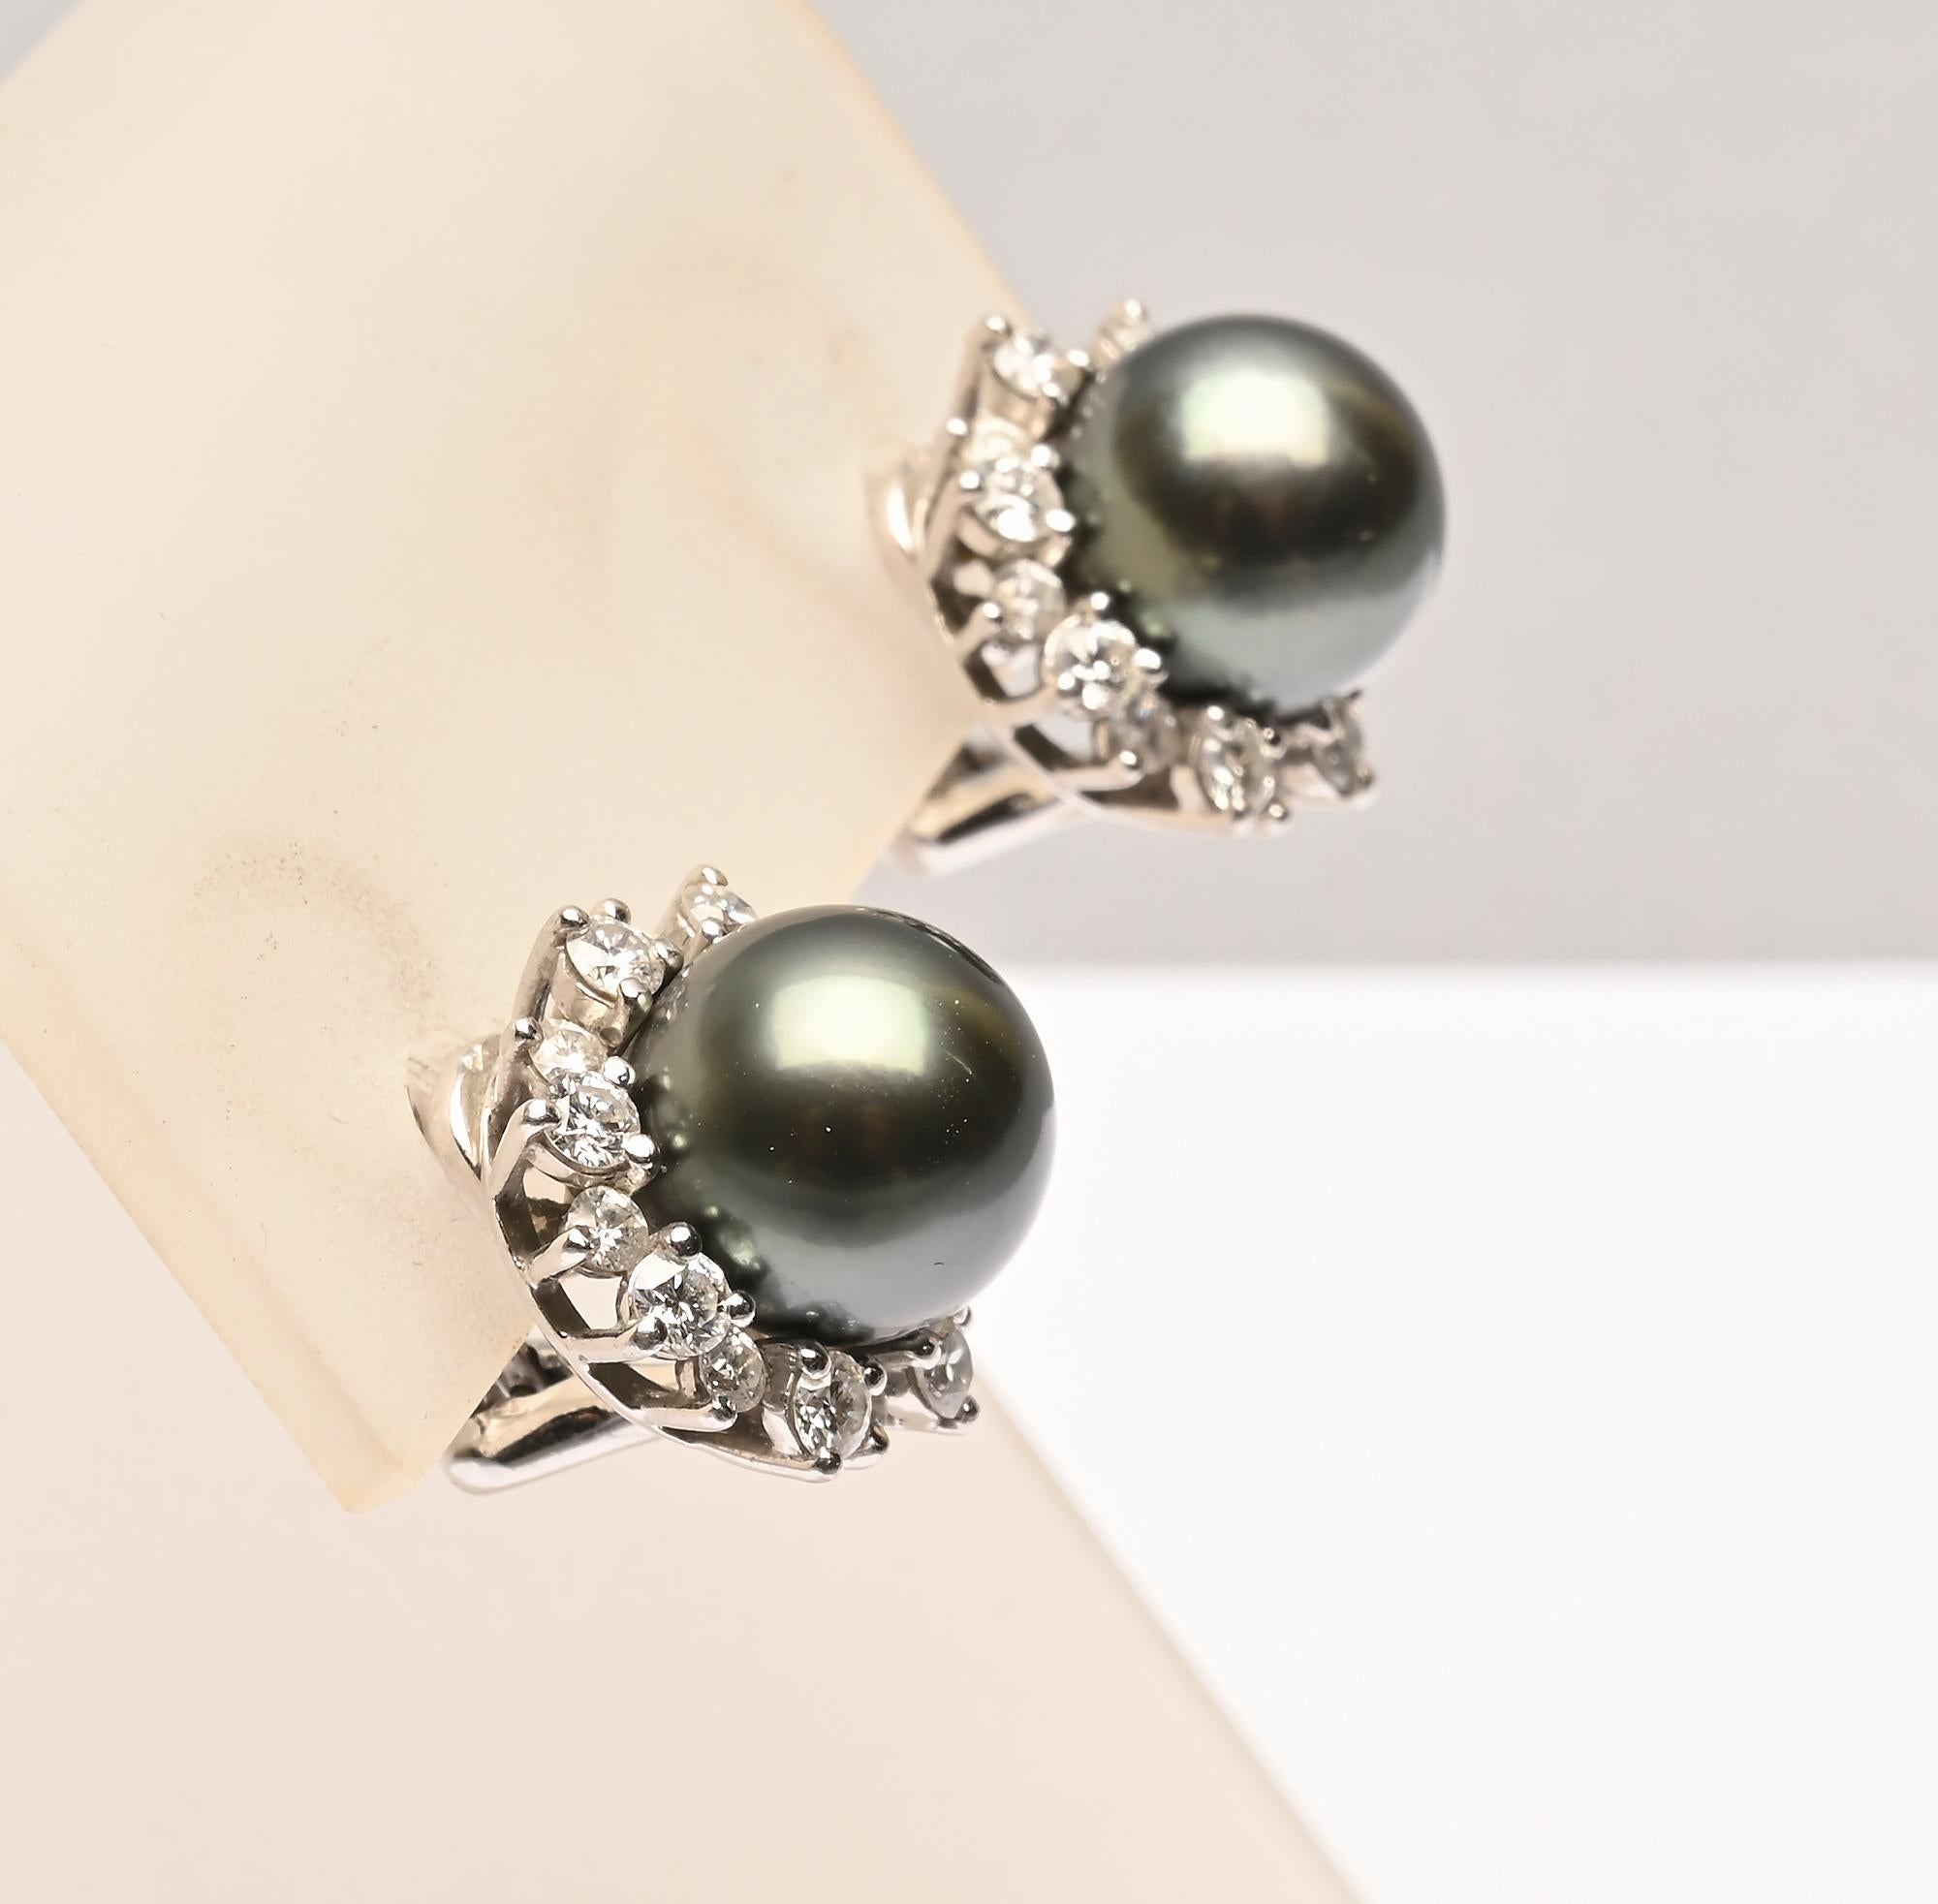 Superbes boucles d'oreilles en perles noires des mers du Sud de Mikimoto entourées de diamants en forme de poire. Les perles mesurent 10,5 millimètres. Il y a 32 diamants d'une valeur totale de 1,5 million d'euros.  poids de  .66 carats. Les boucles